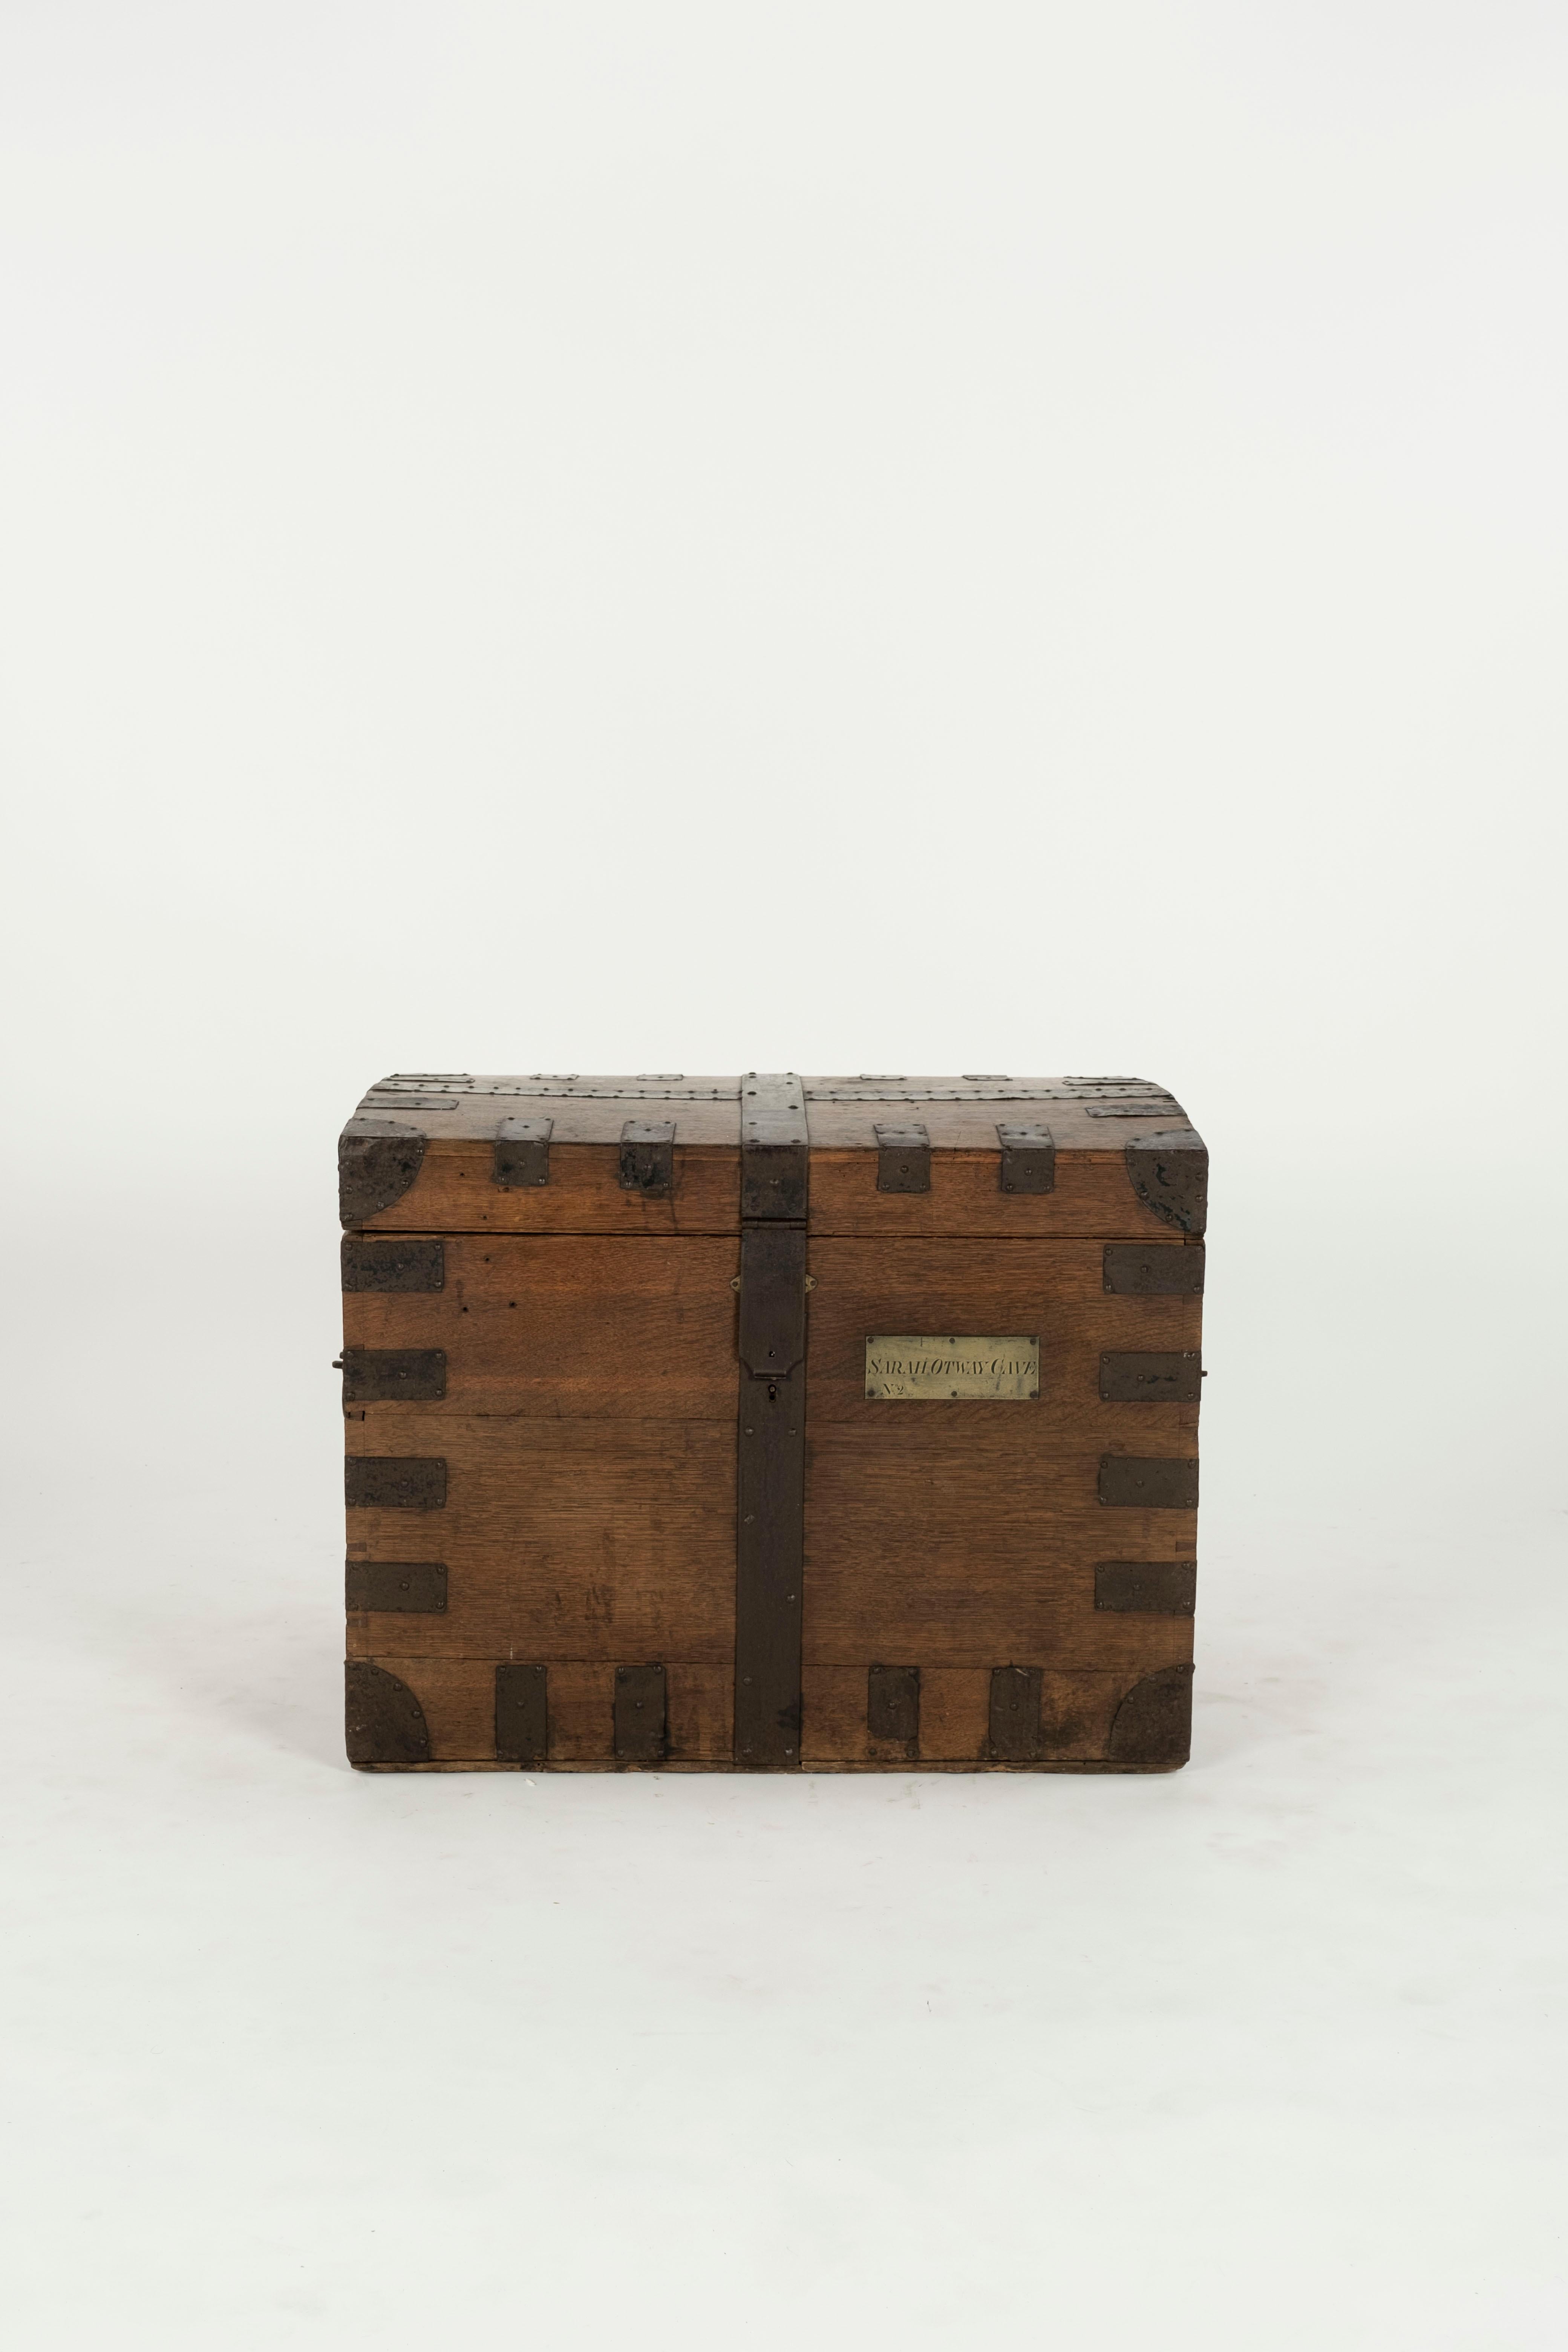 Malle en bois avec sangles et fermetures en fer.  Le coffre appartenait à Sarah Otway Cave comme indiqué sur la plaque.